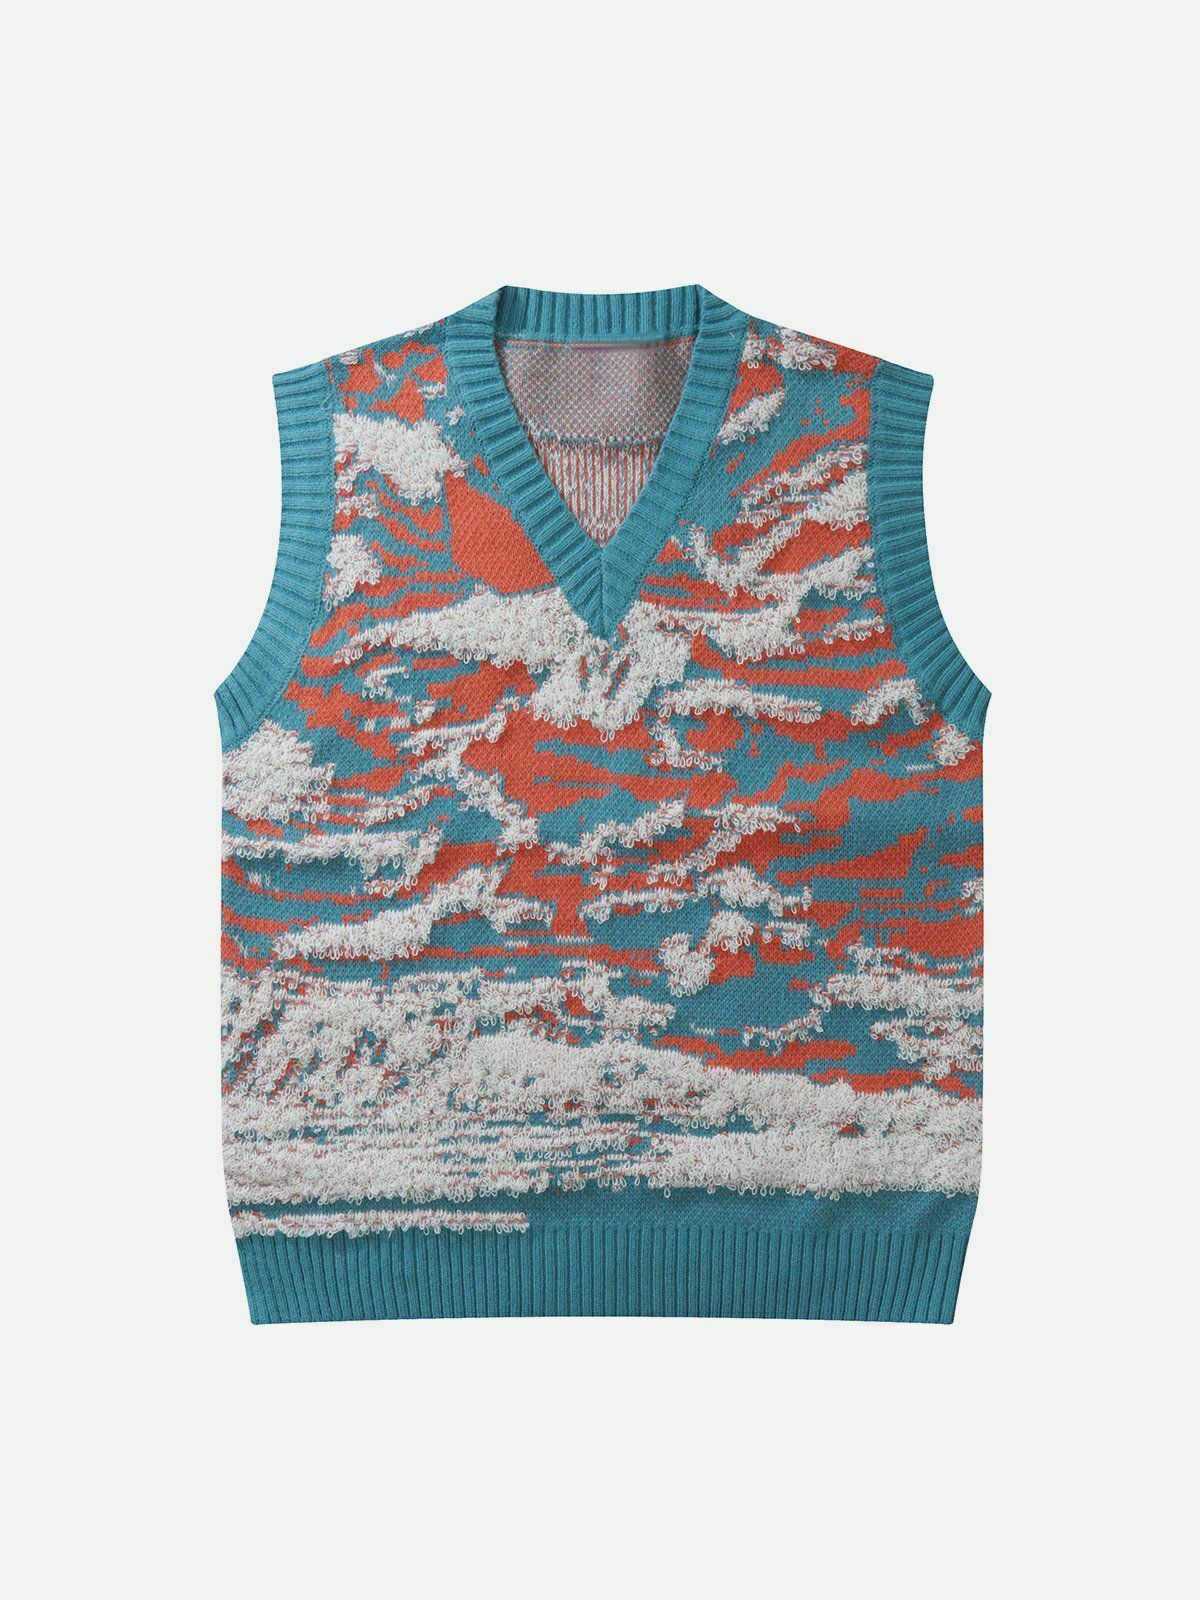 vibrant tie dye sweater vest urban streetwear 7188